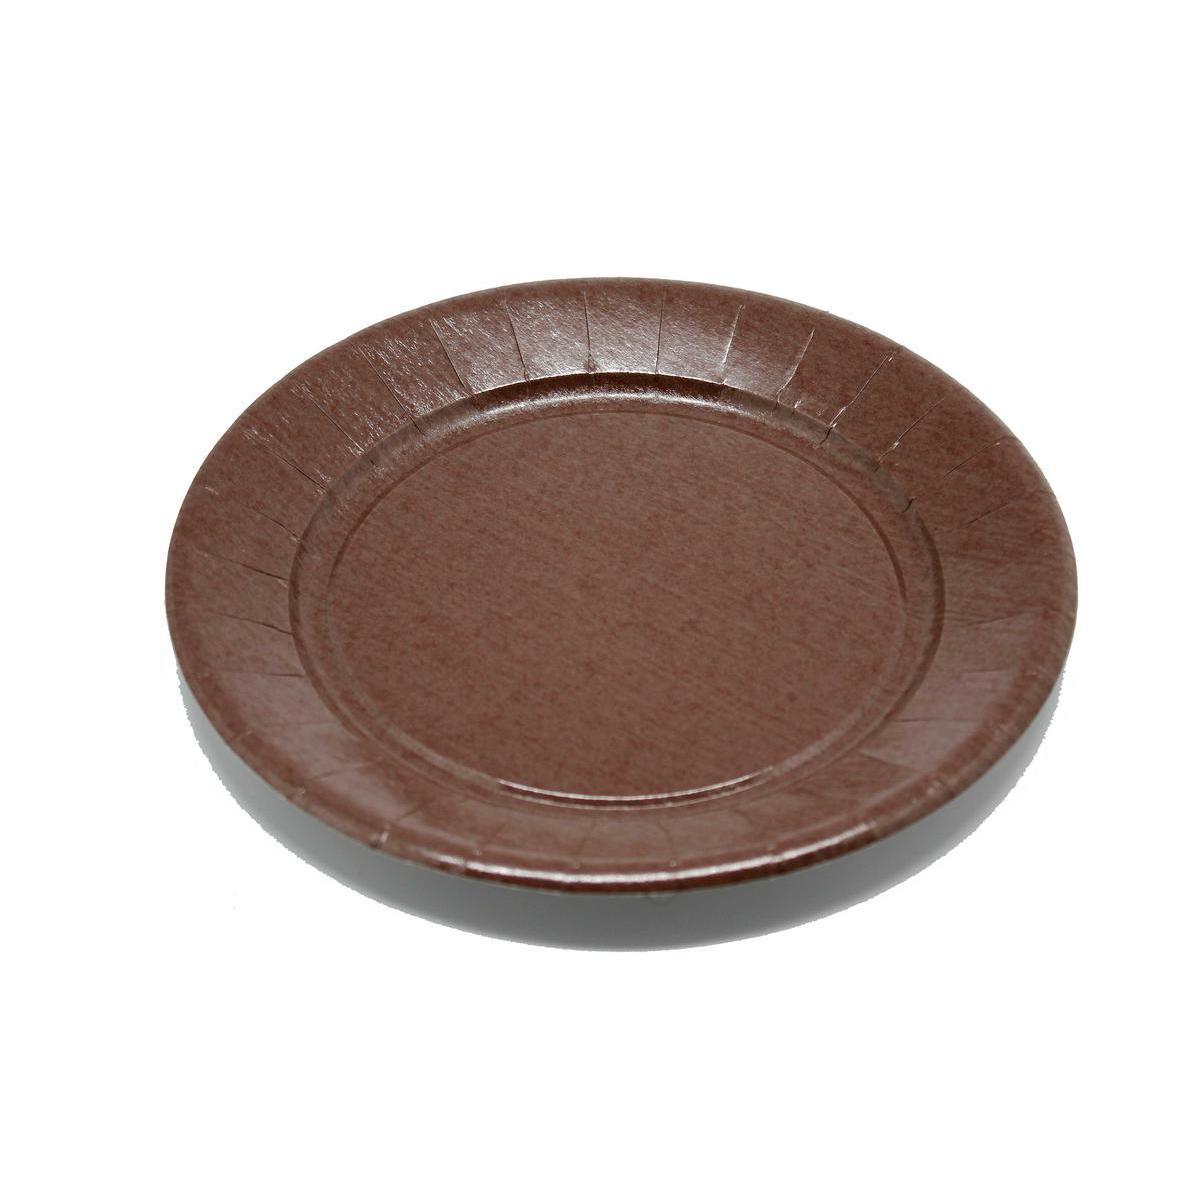 Lot de 20 assiettes - plastique - diamètre 23 cm - Marron chocolat